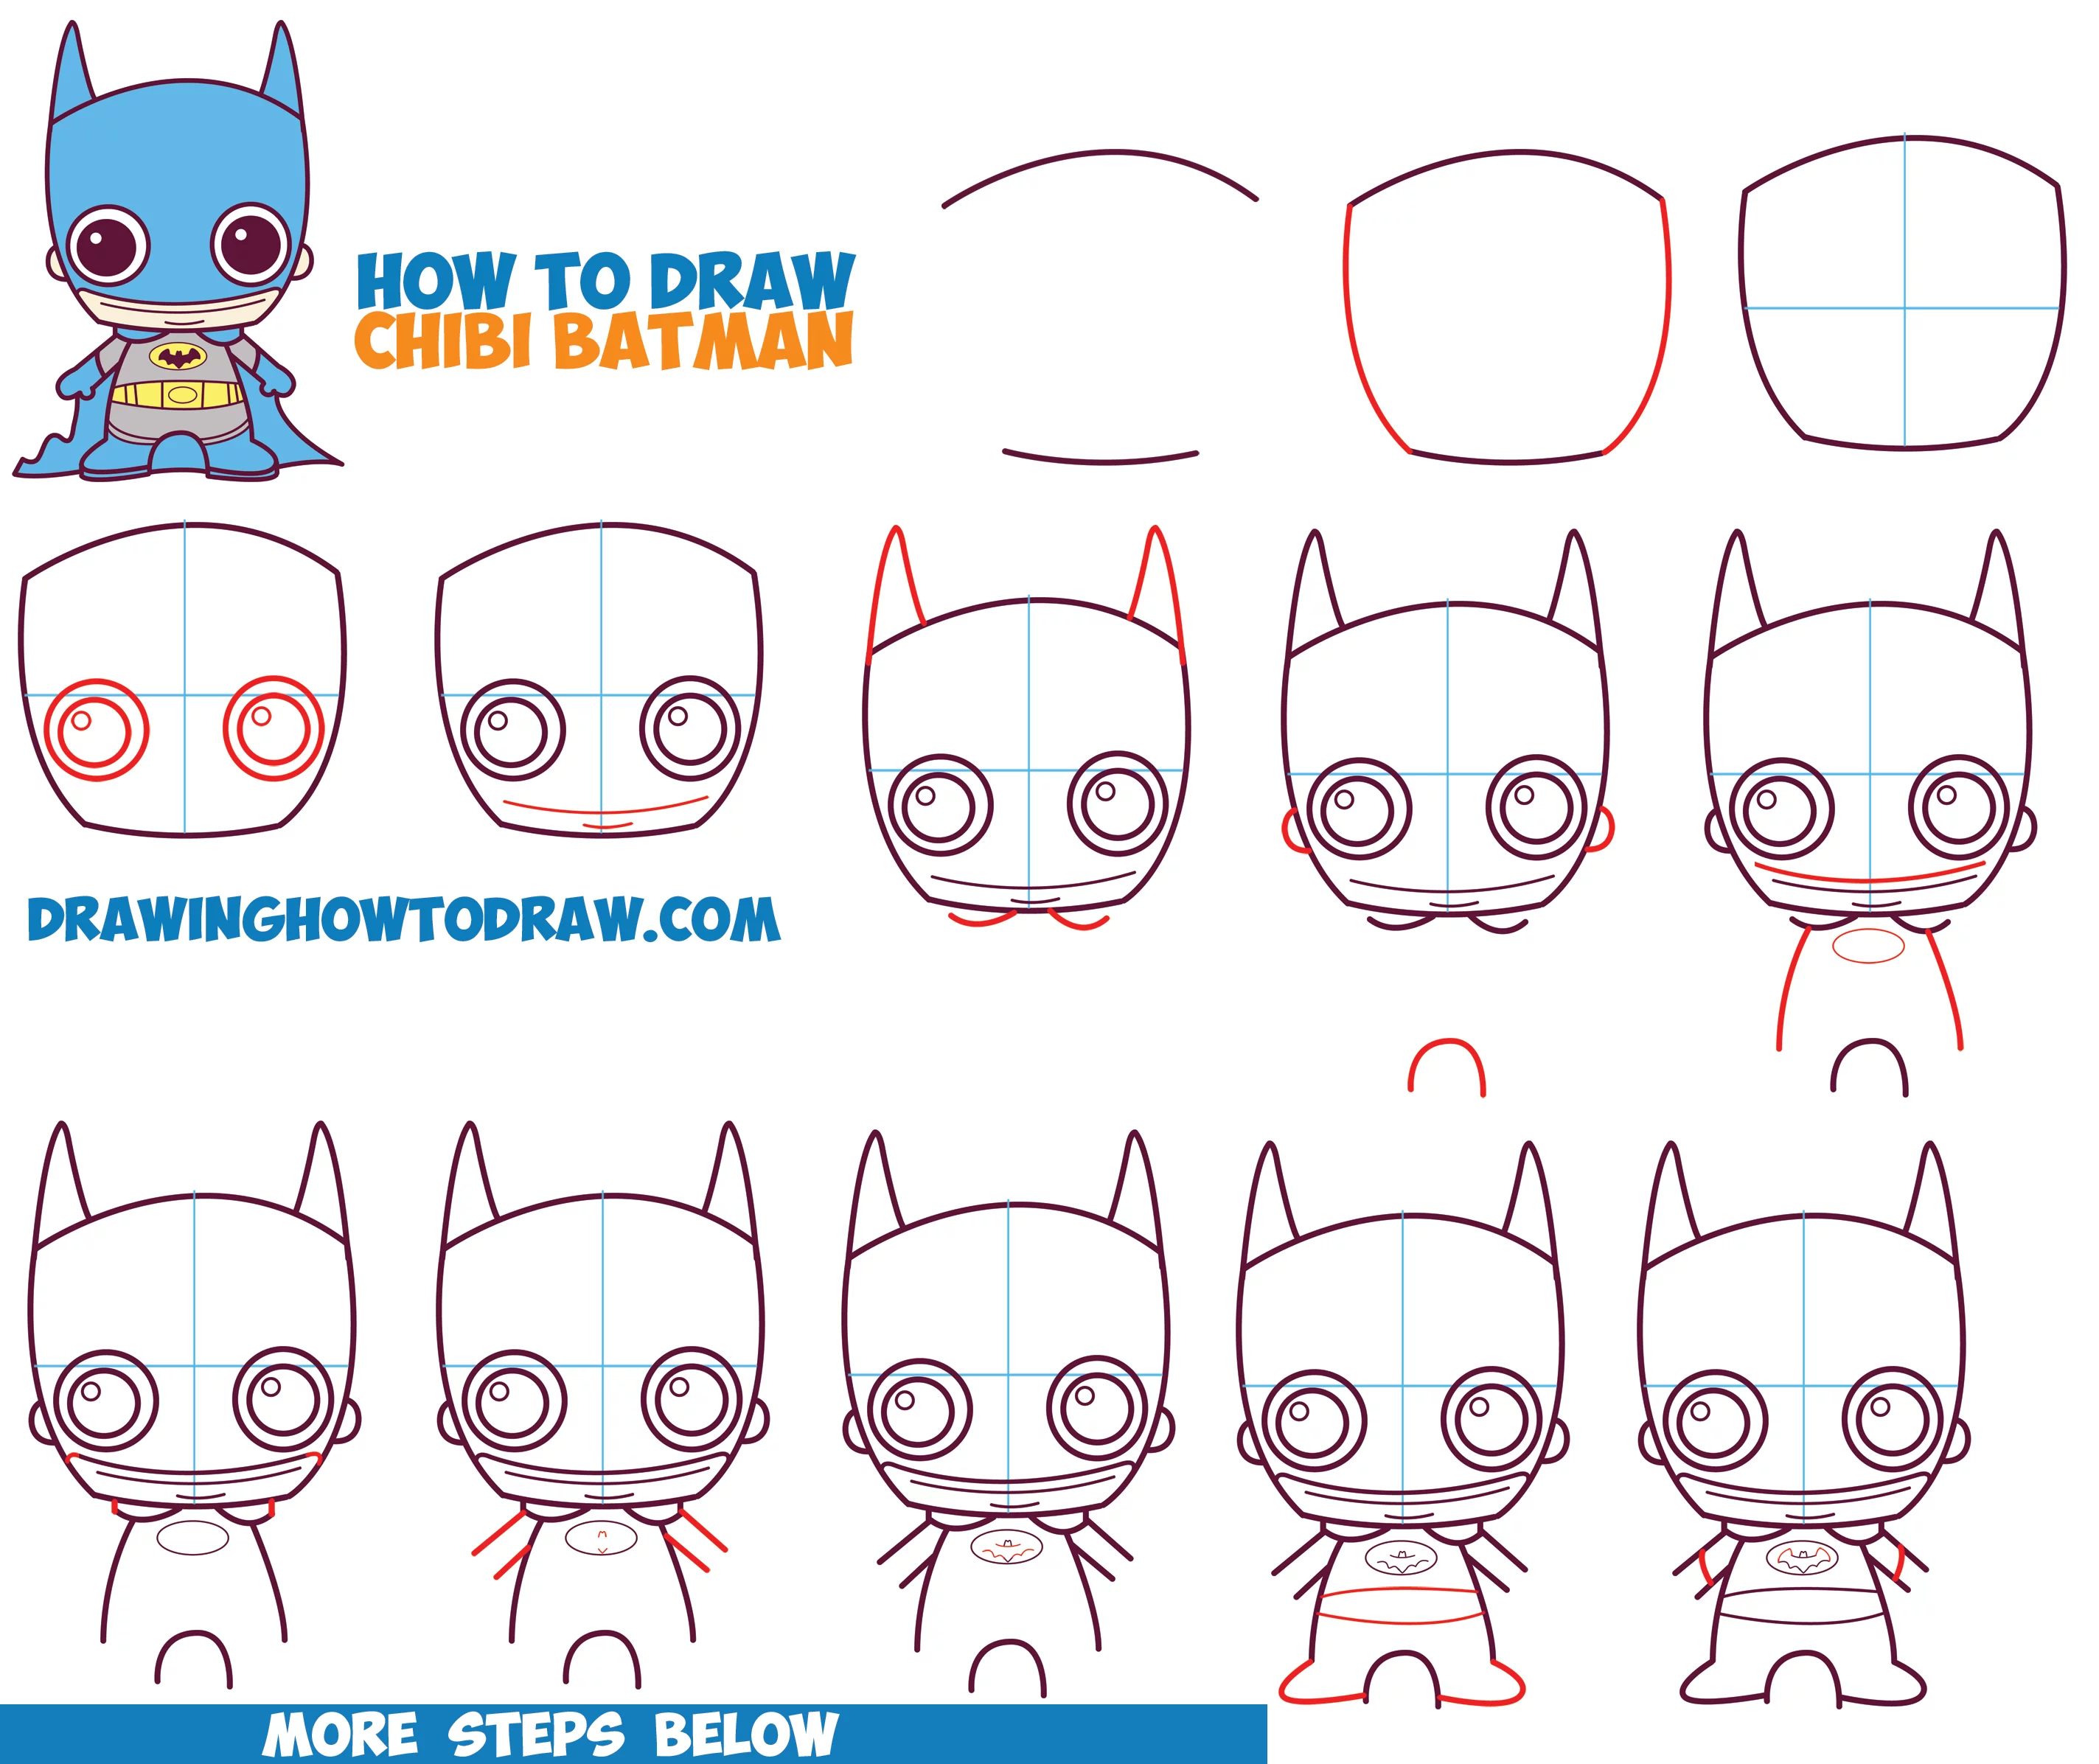 Hoe te Tekenen Chibi Schattige Batman van DC Comics in Eenvoudige Stap voor Stap Tekenen Tutorial voor Kinderen